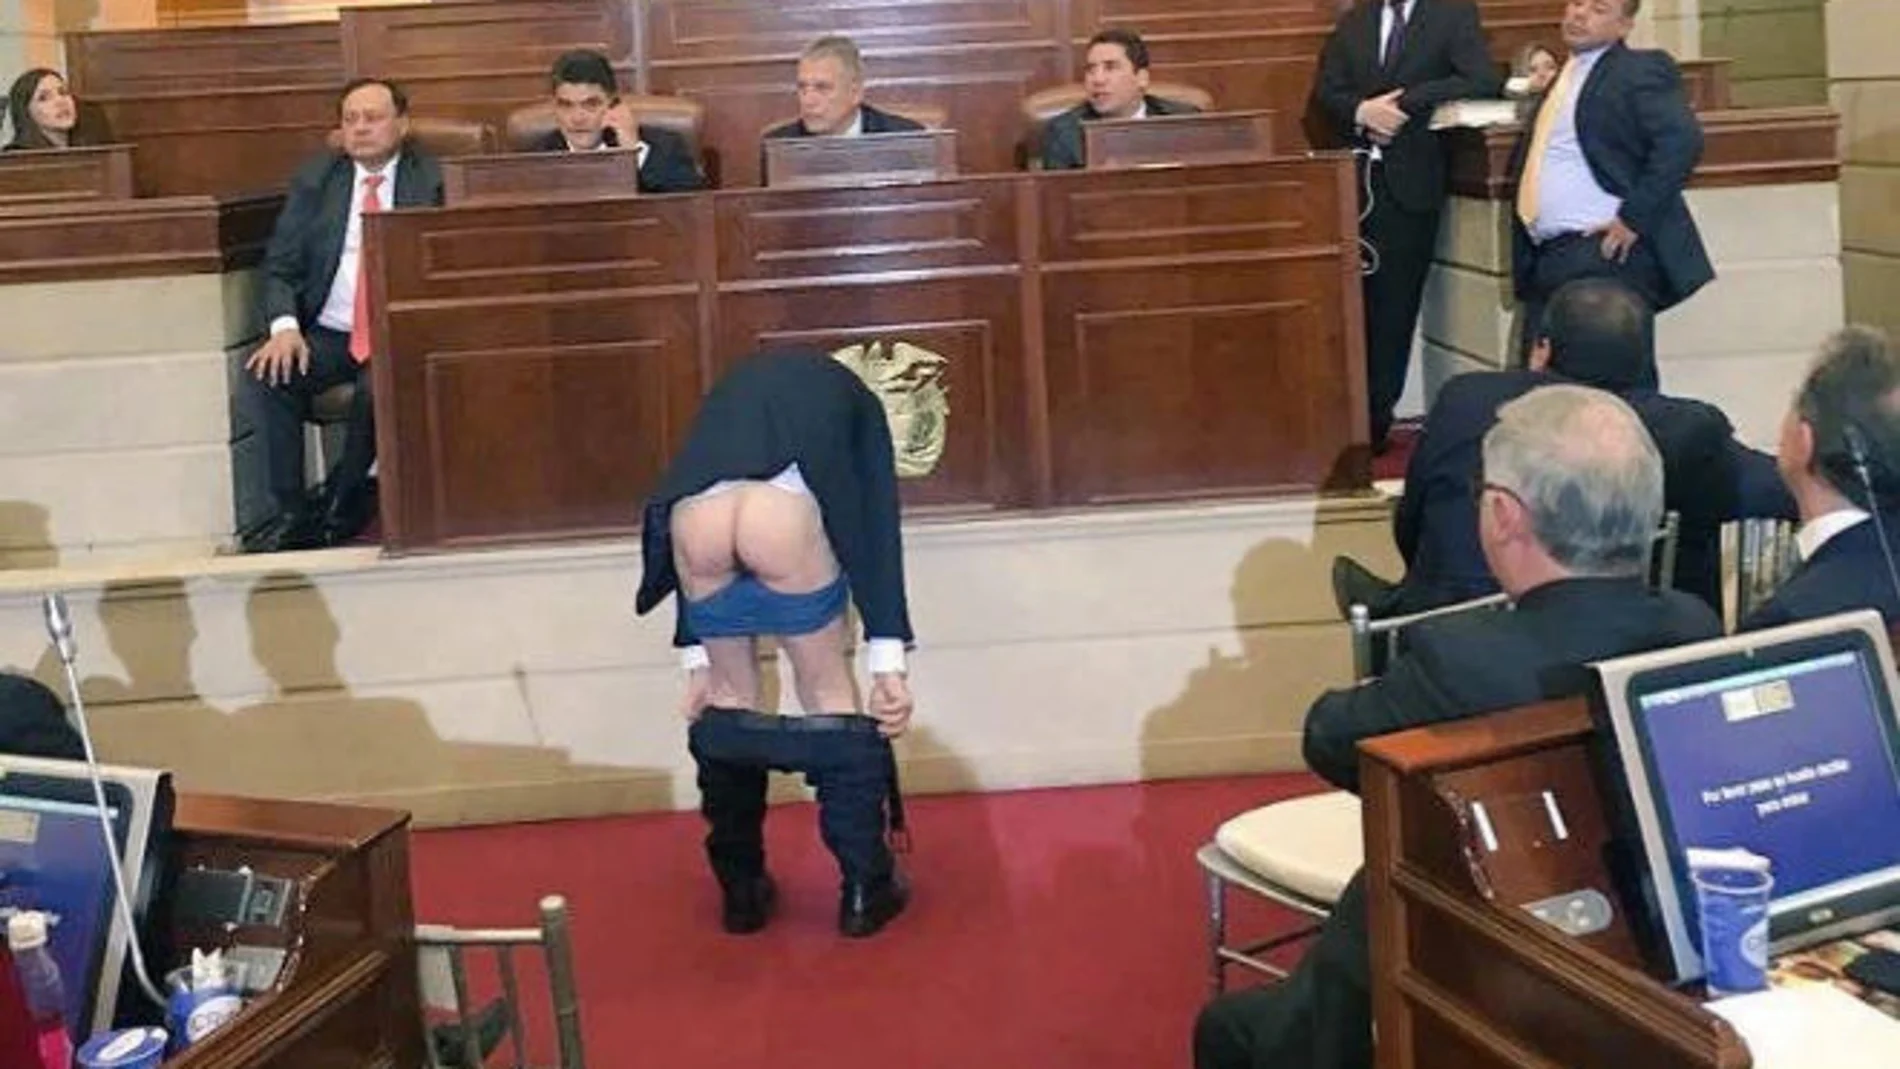 Así, Mockus se acercó a la parte delantera, se desabrochó el pantalón y se lo bajó con los calzoncillos para finalmente mostrar su trasero a los demás congresistas. Foto: Twitter